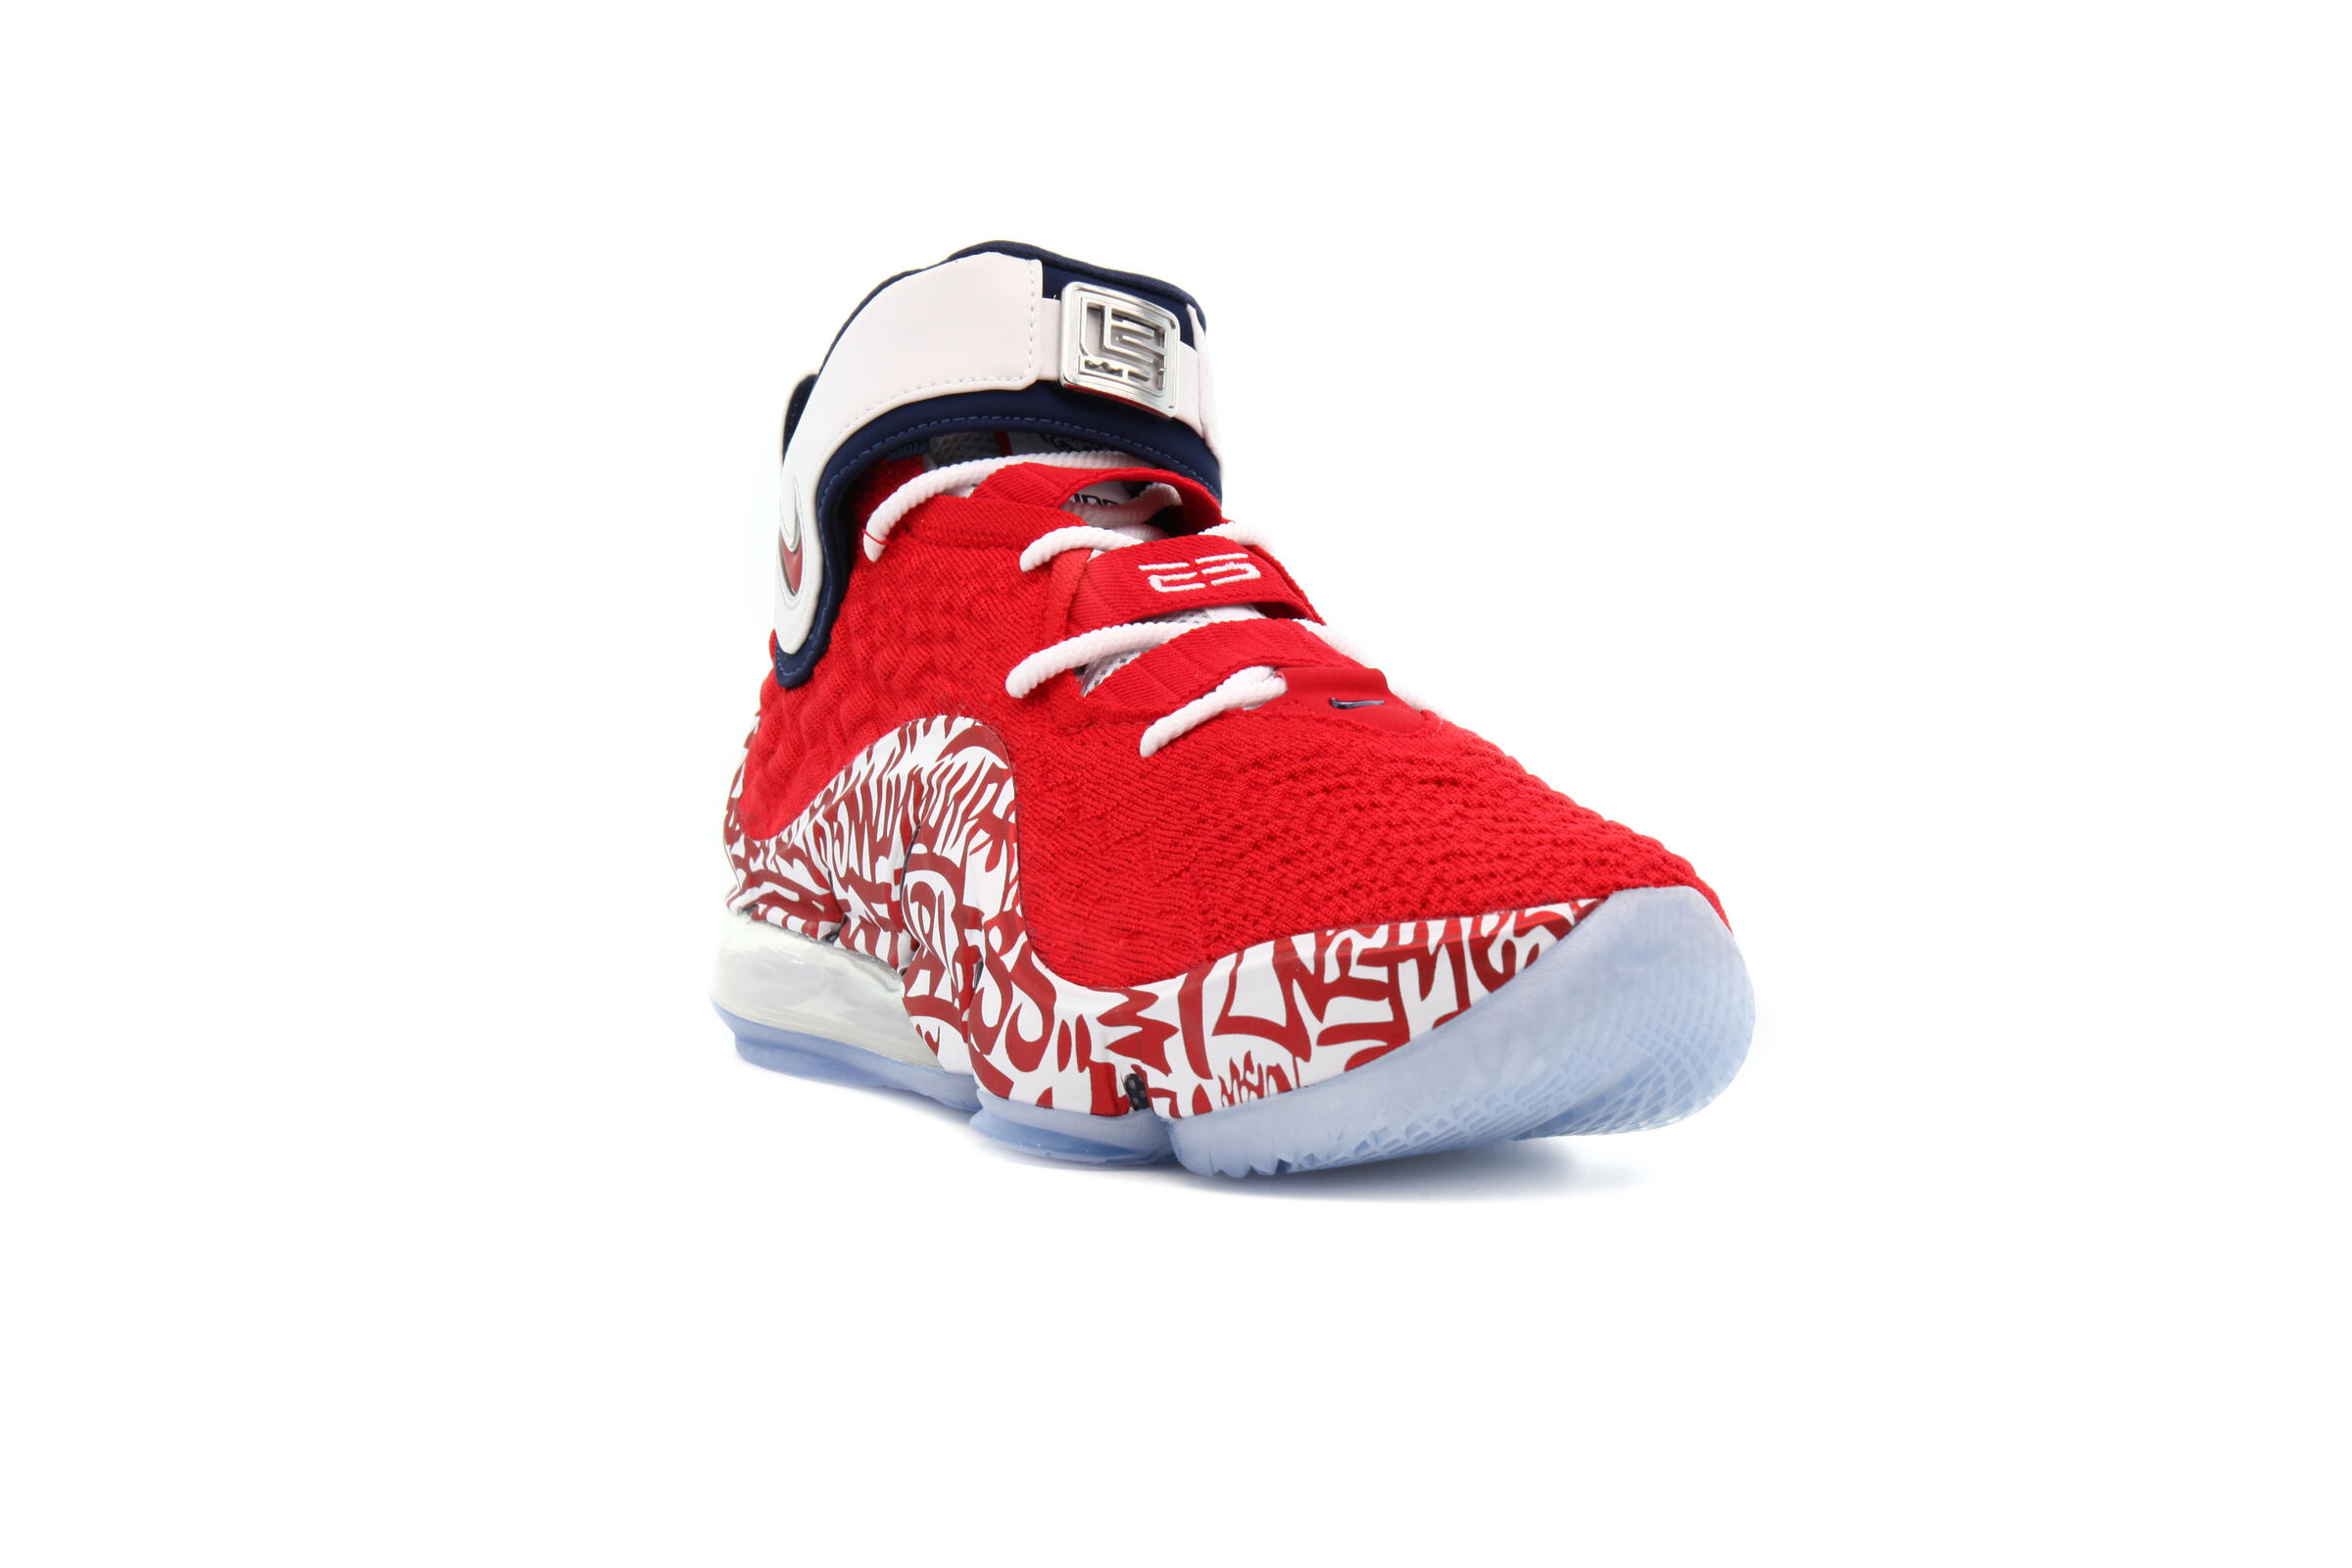 Nike LEBRON XVII FP "UNIVERSITY RED"